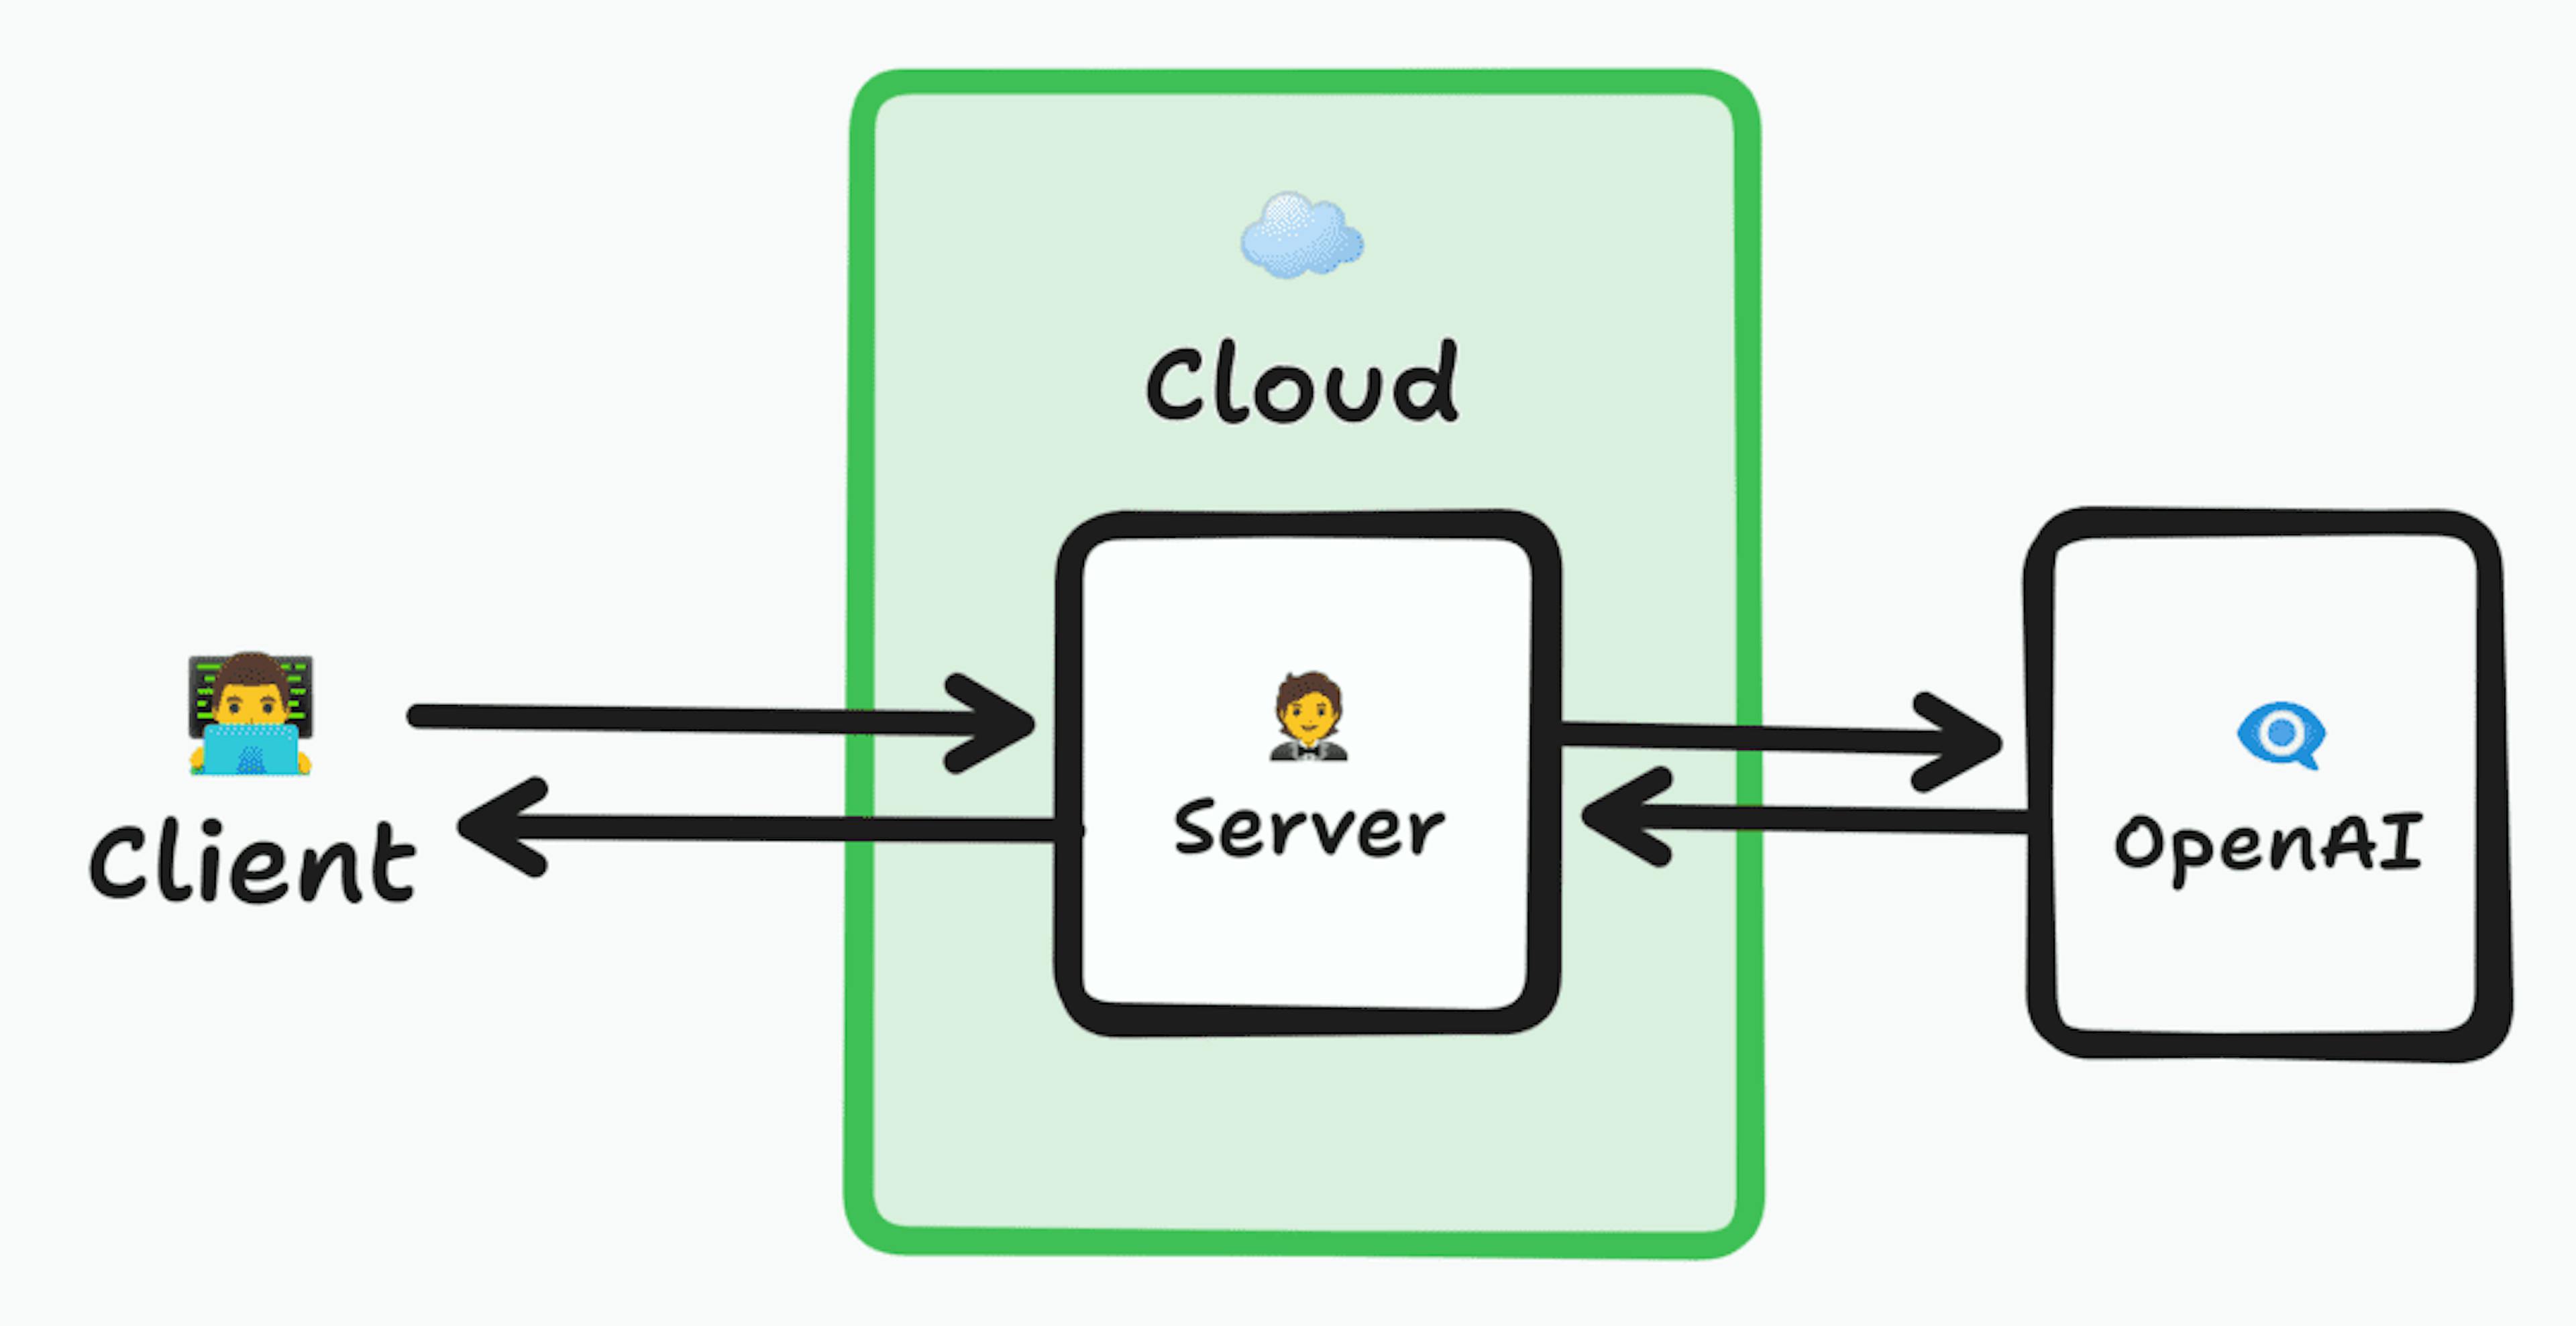 Diagrama de arquitectura que muestra un cliente que se conecta a un servidor dentro de la nube, que reenvía la solicitud a OpenAI, luego regresa al servidor y nuevamente al cliente.